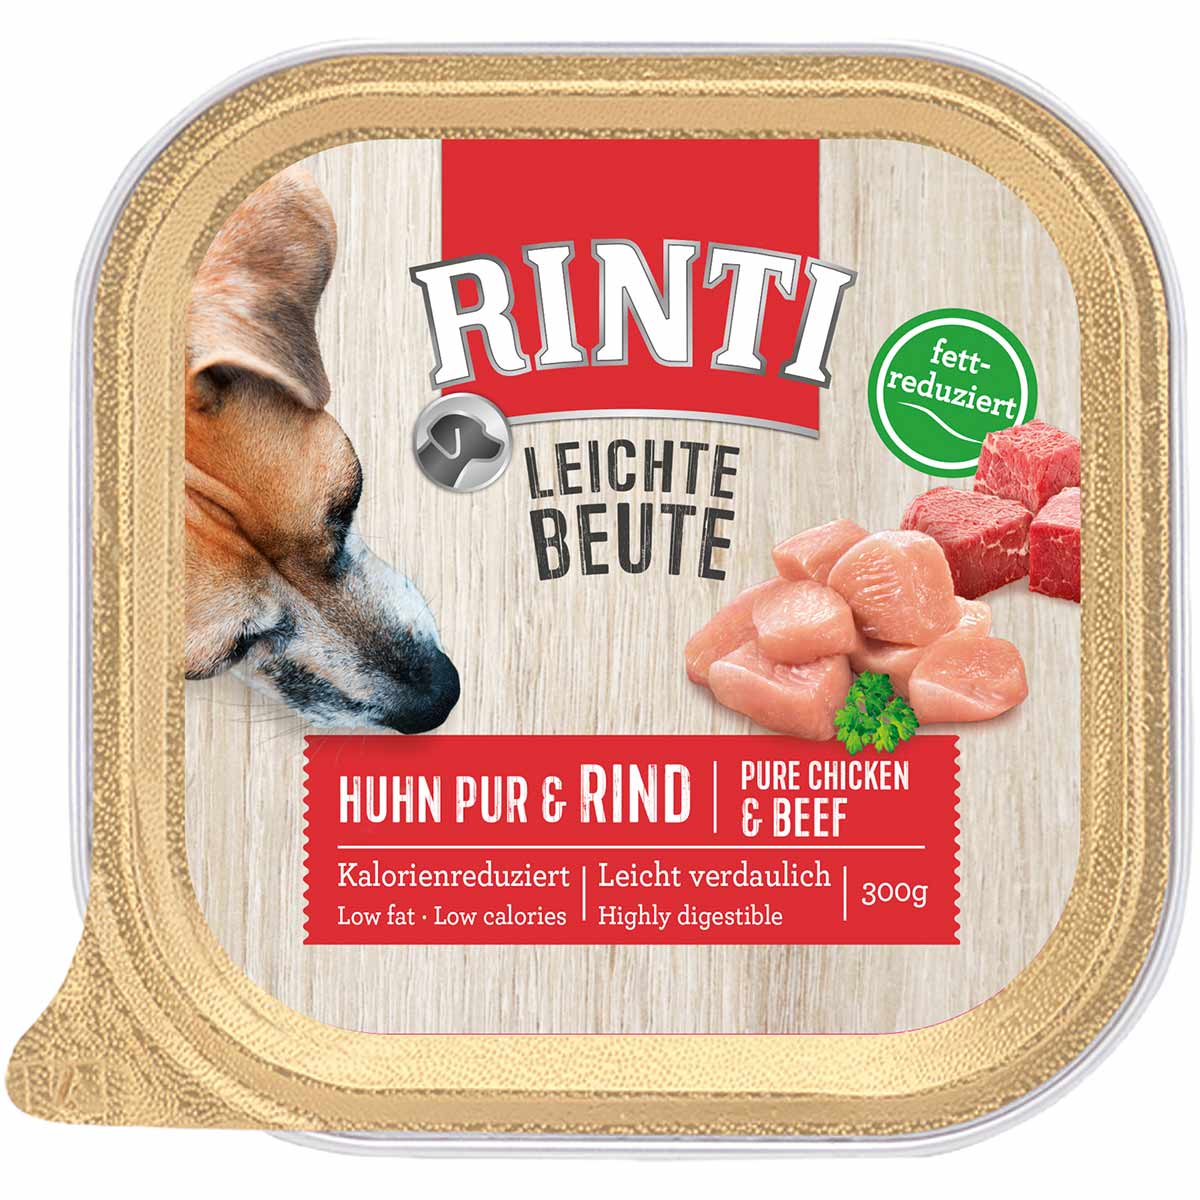 Rinti Leichte Beute Huhn pur & Rind 18x300g von Rinti